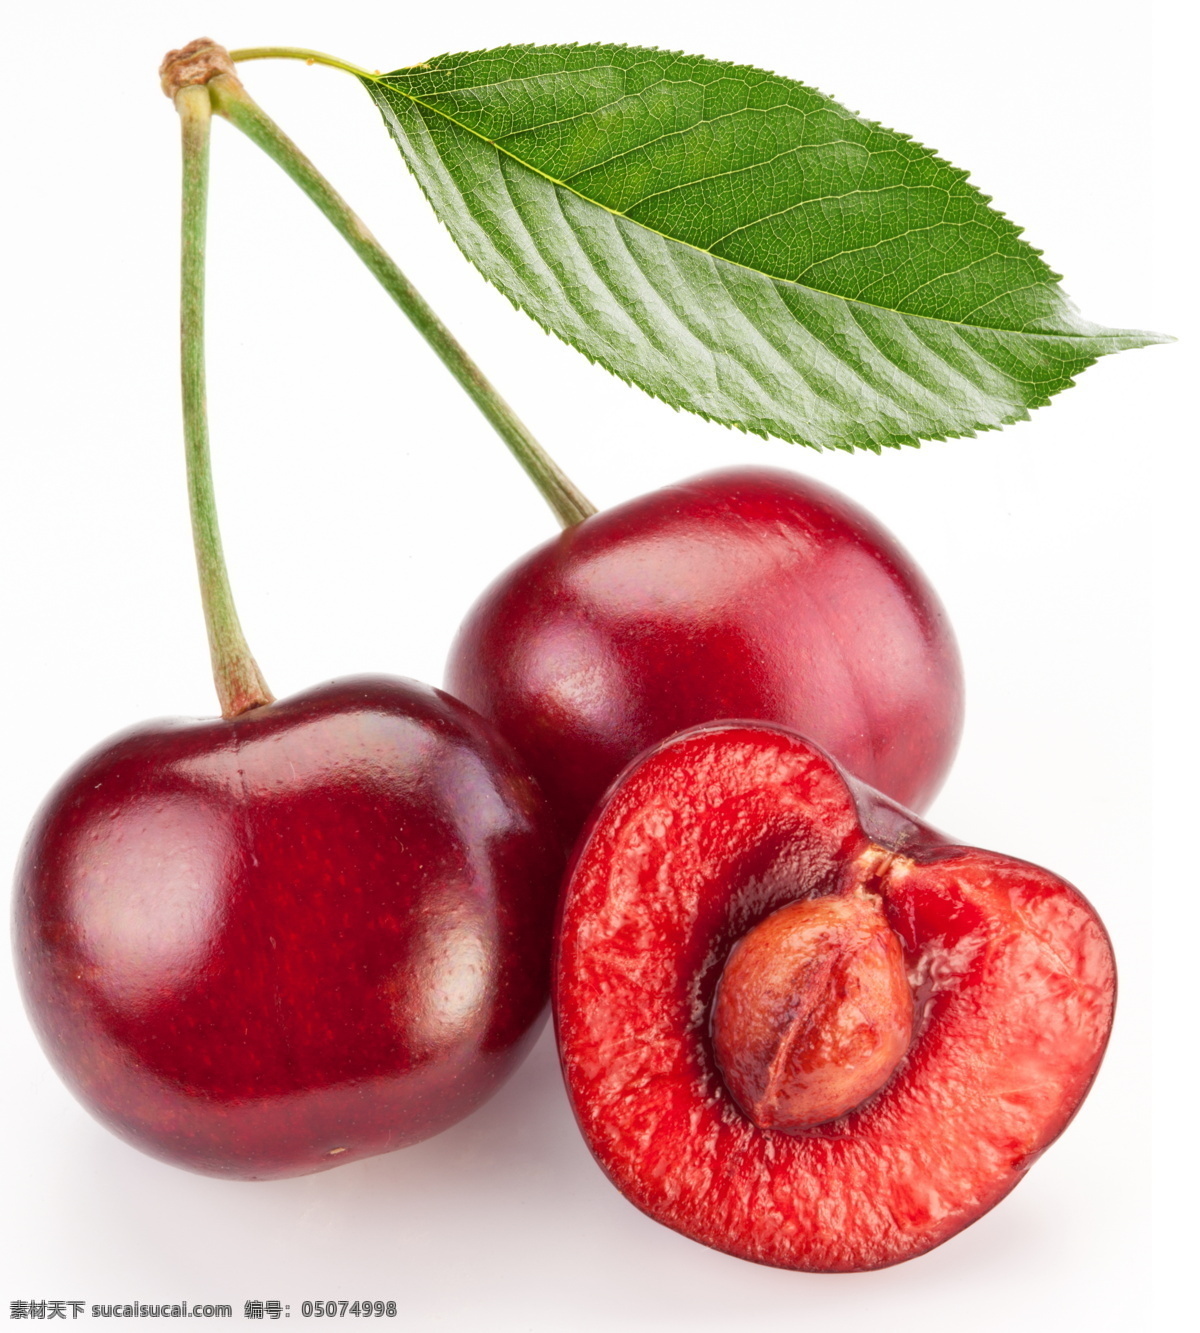 水果樱桃 樱桃 高清图片 水果 高清大图 水果图片 樱桃素材 新鲜樱桃 摄影图 高清图 食物 静物摄影 小吃 绿色食品 白色